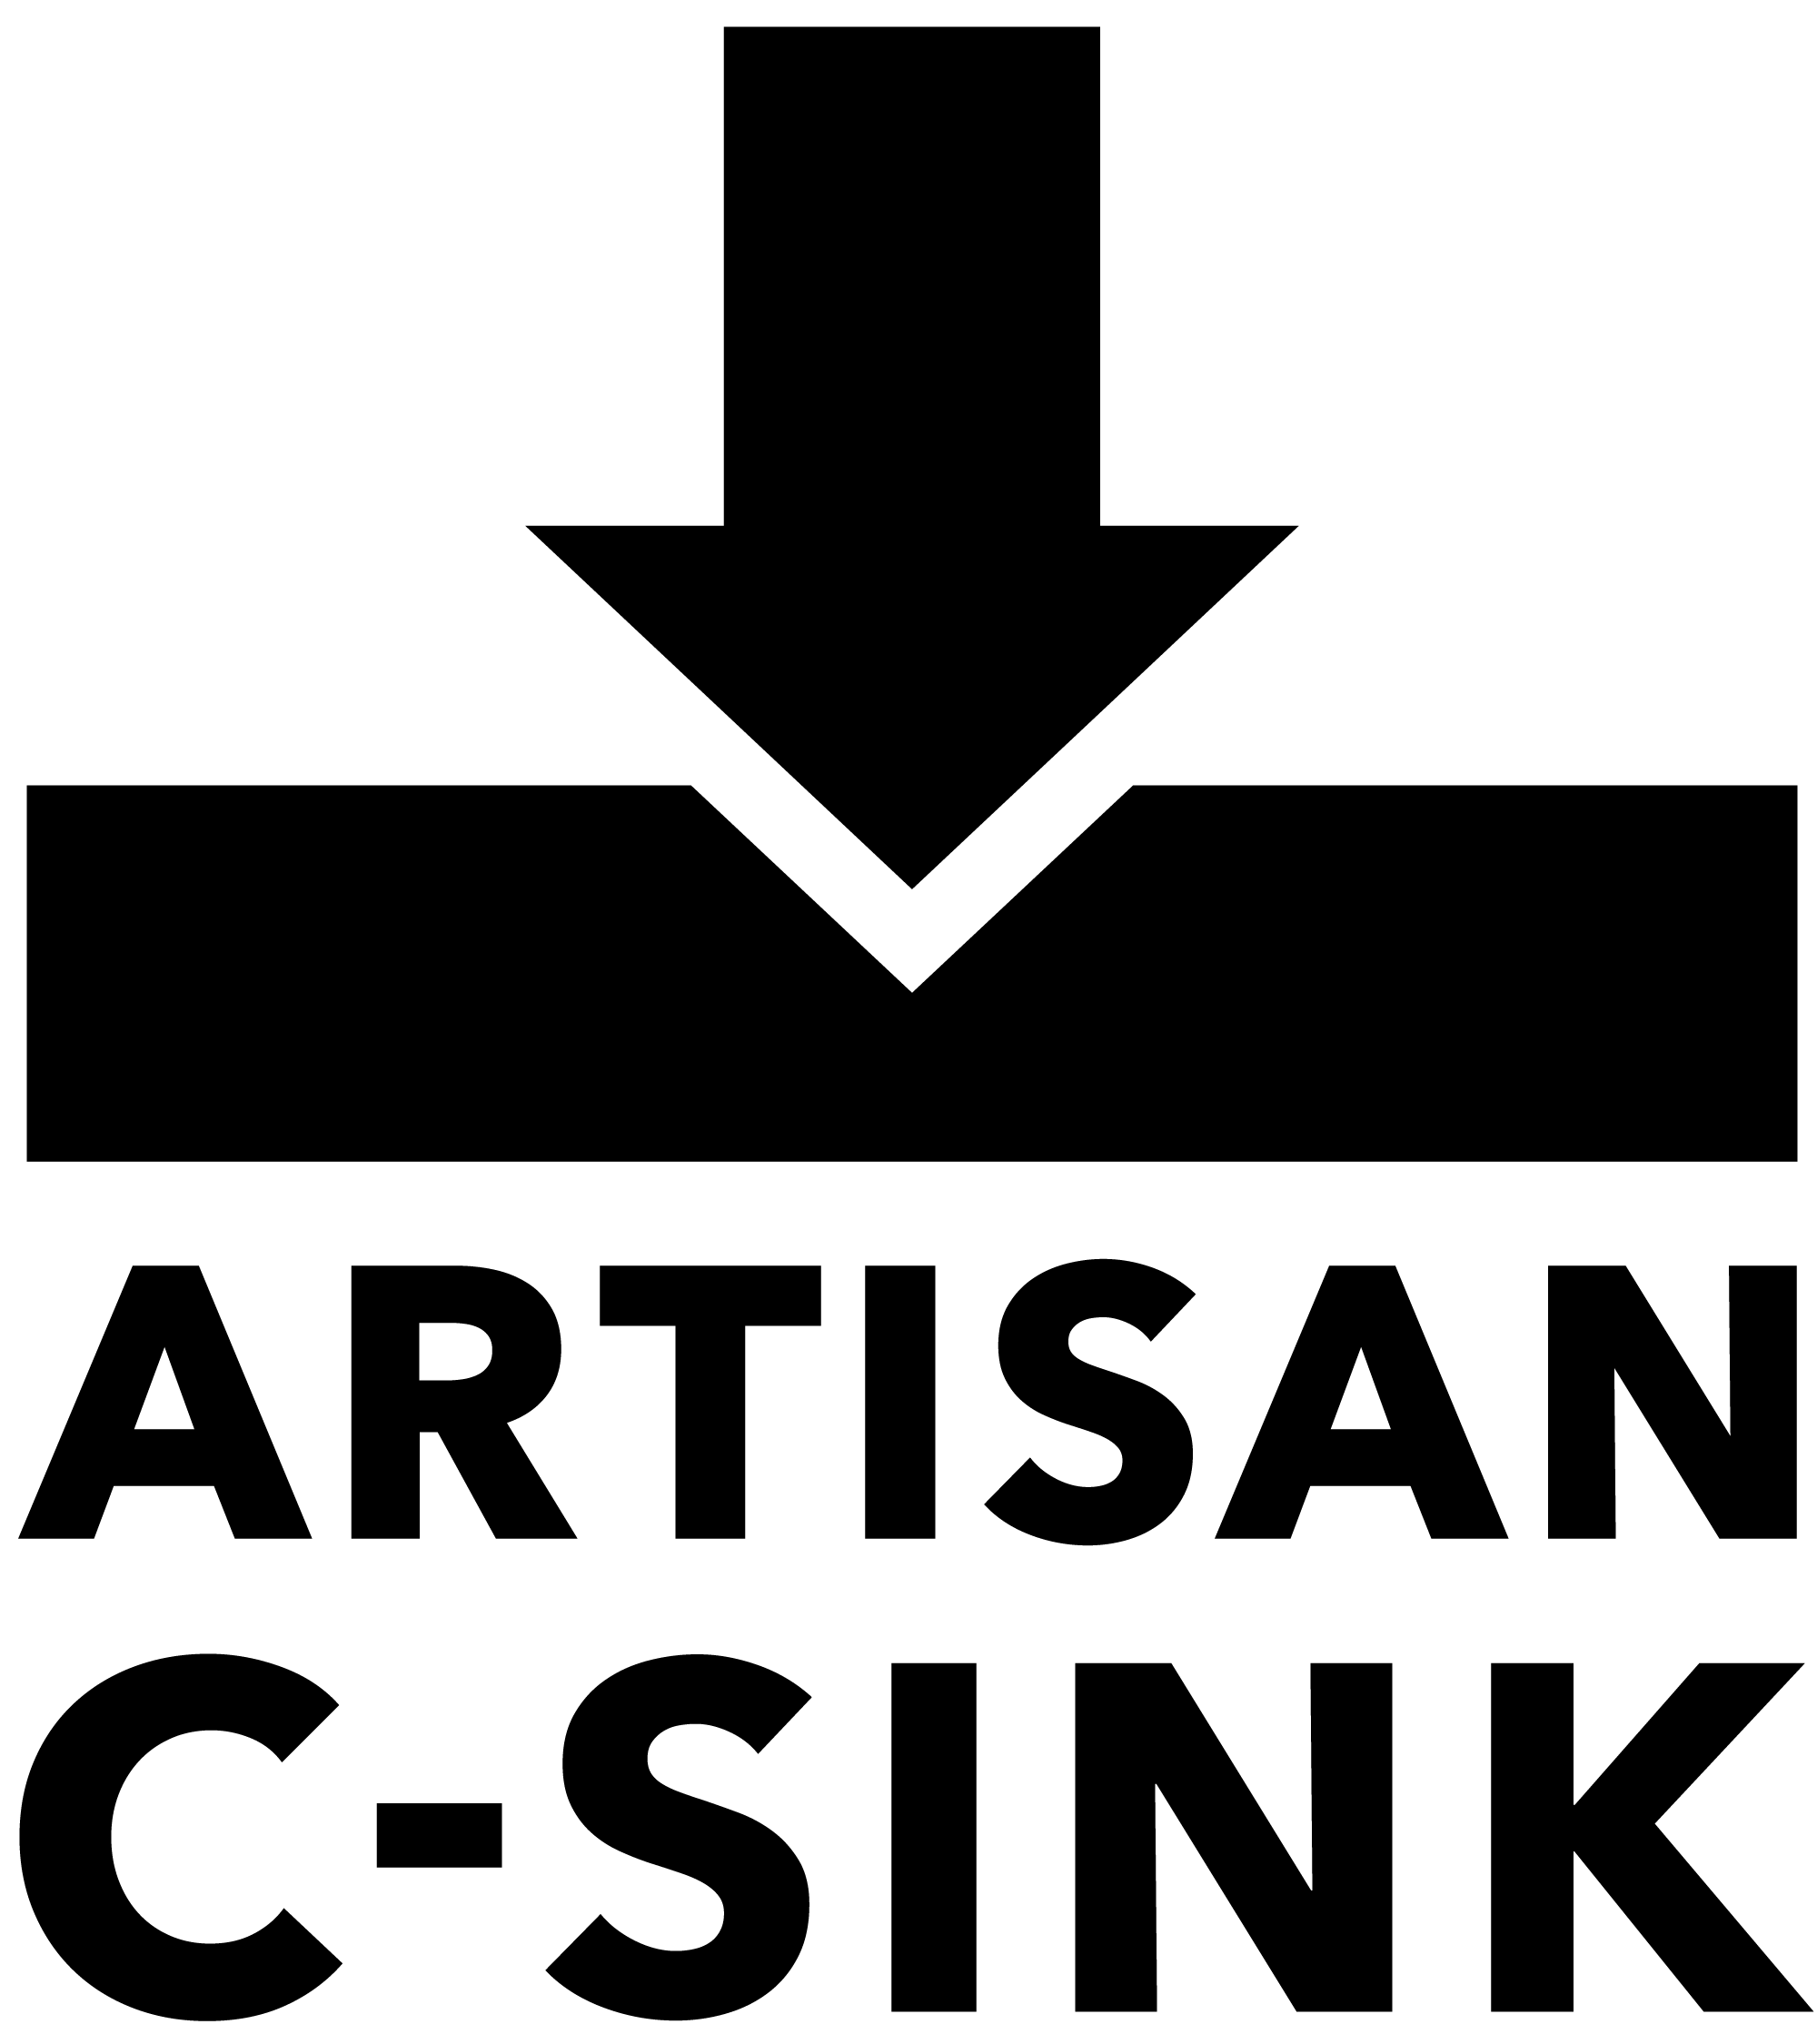 Logo Herstellung von Pflanzenkohle in Ländern mit niedrigem Einkommen